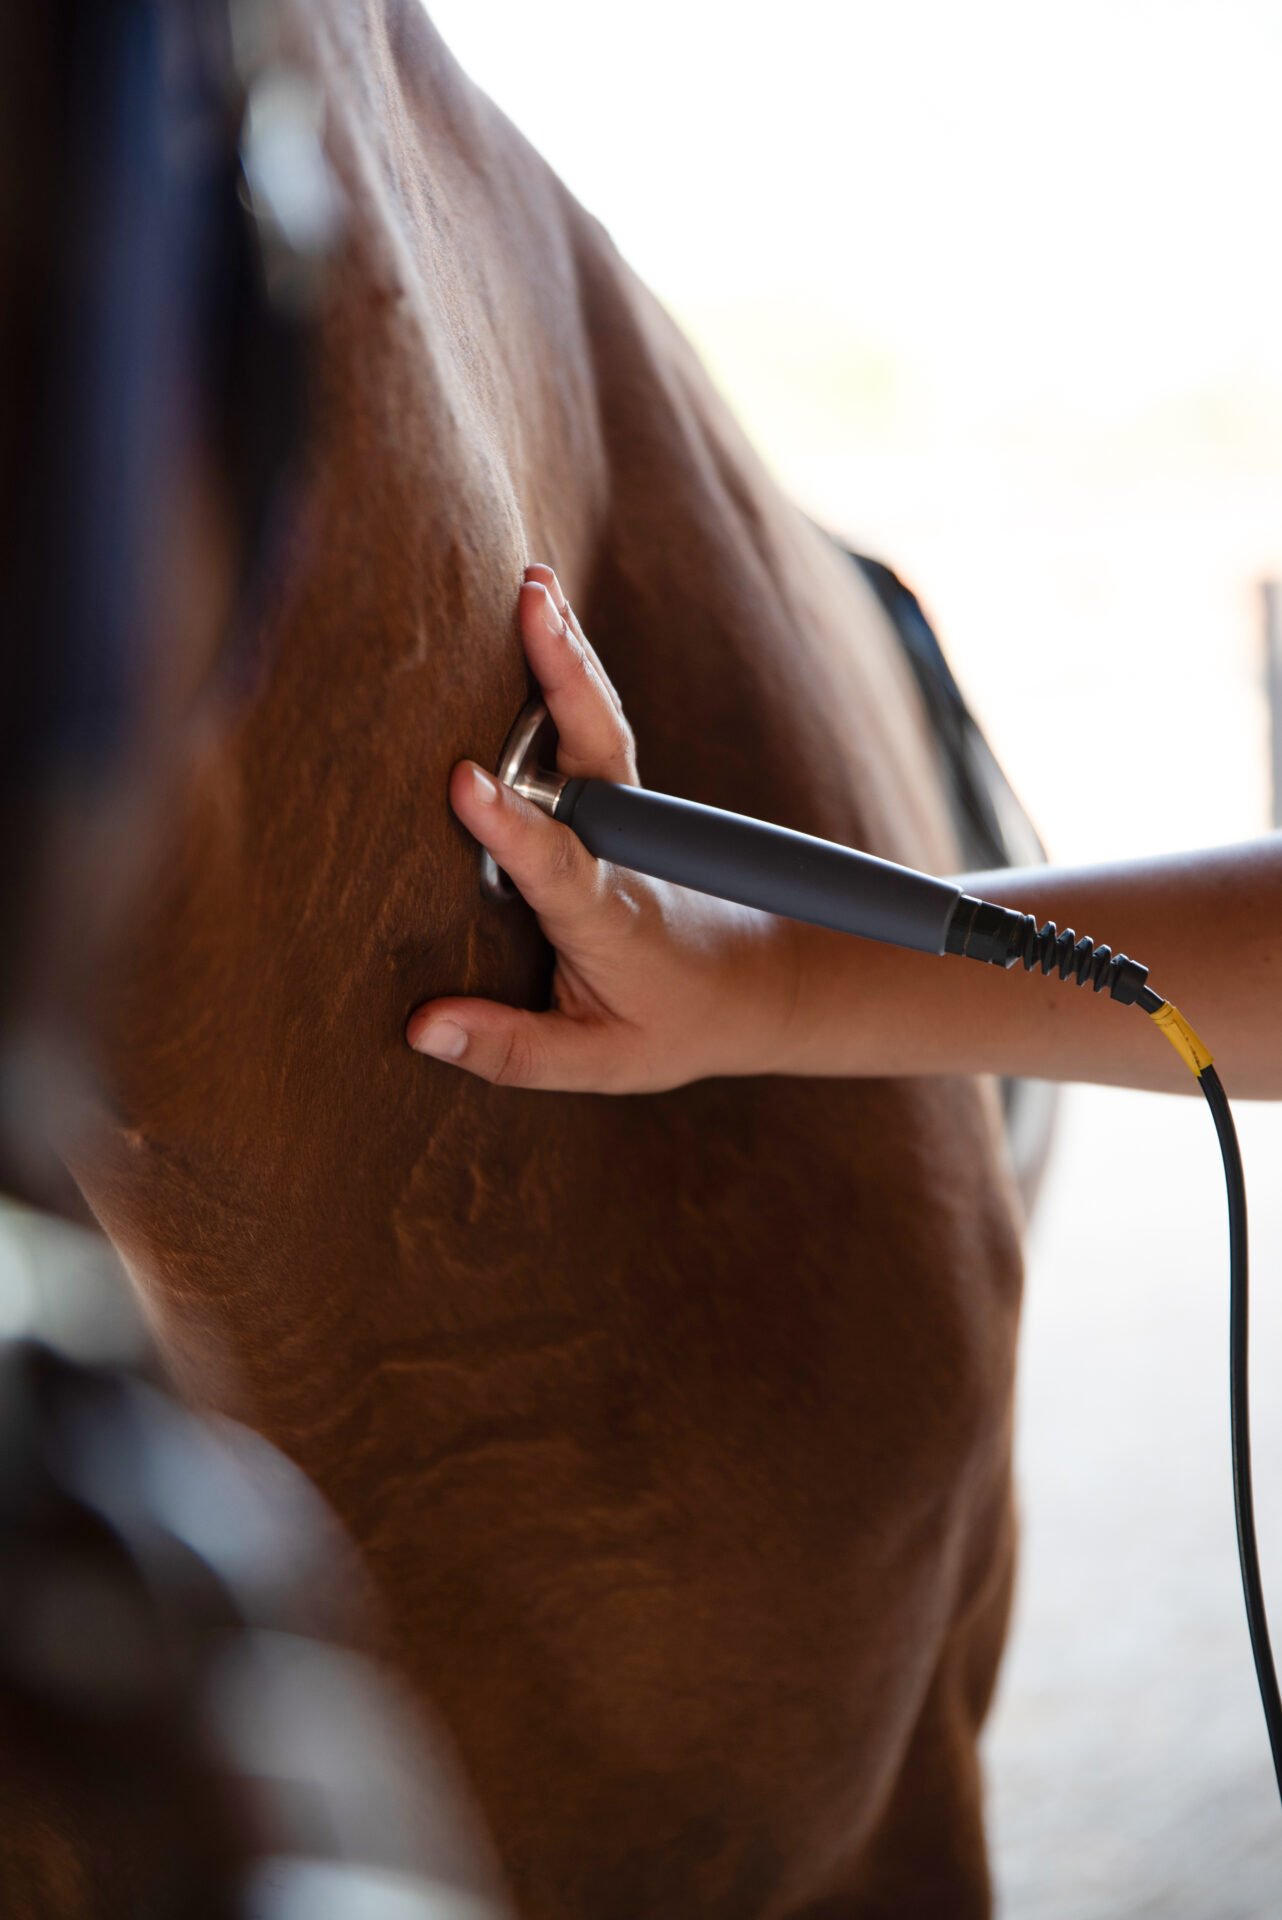 electroterapia y tratamientos fisioterapia equina paa caballos